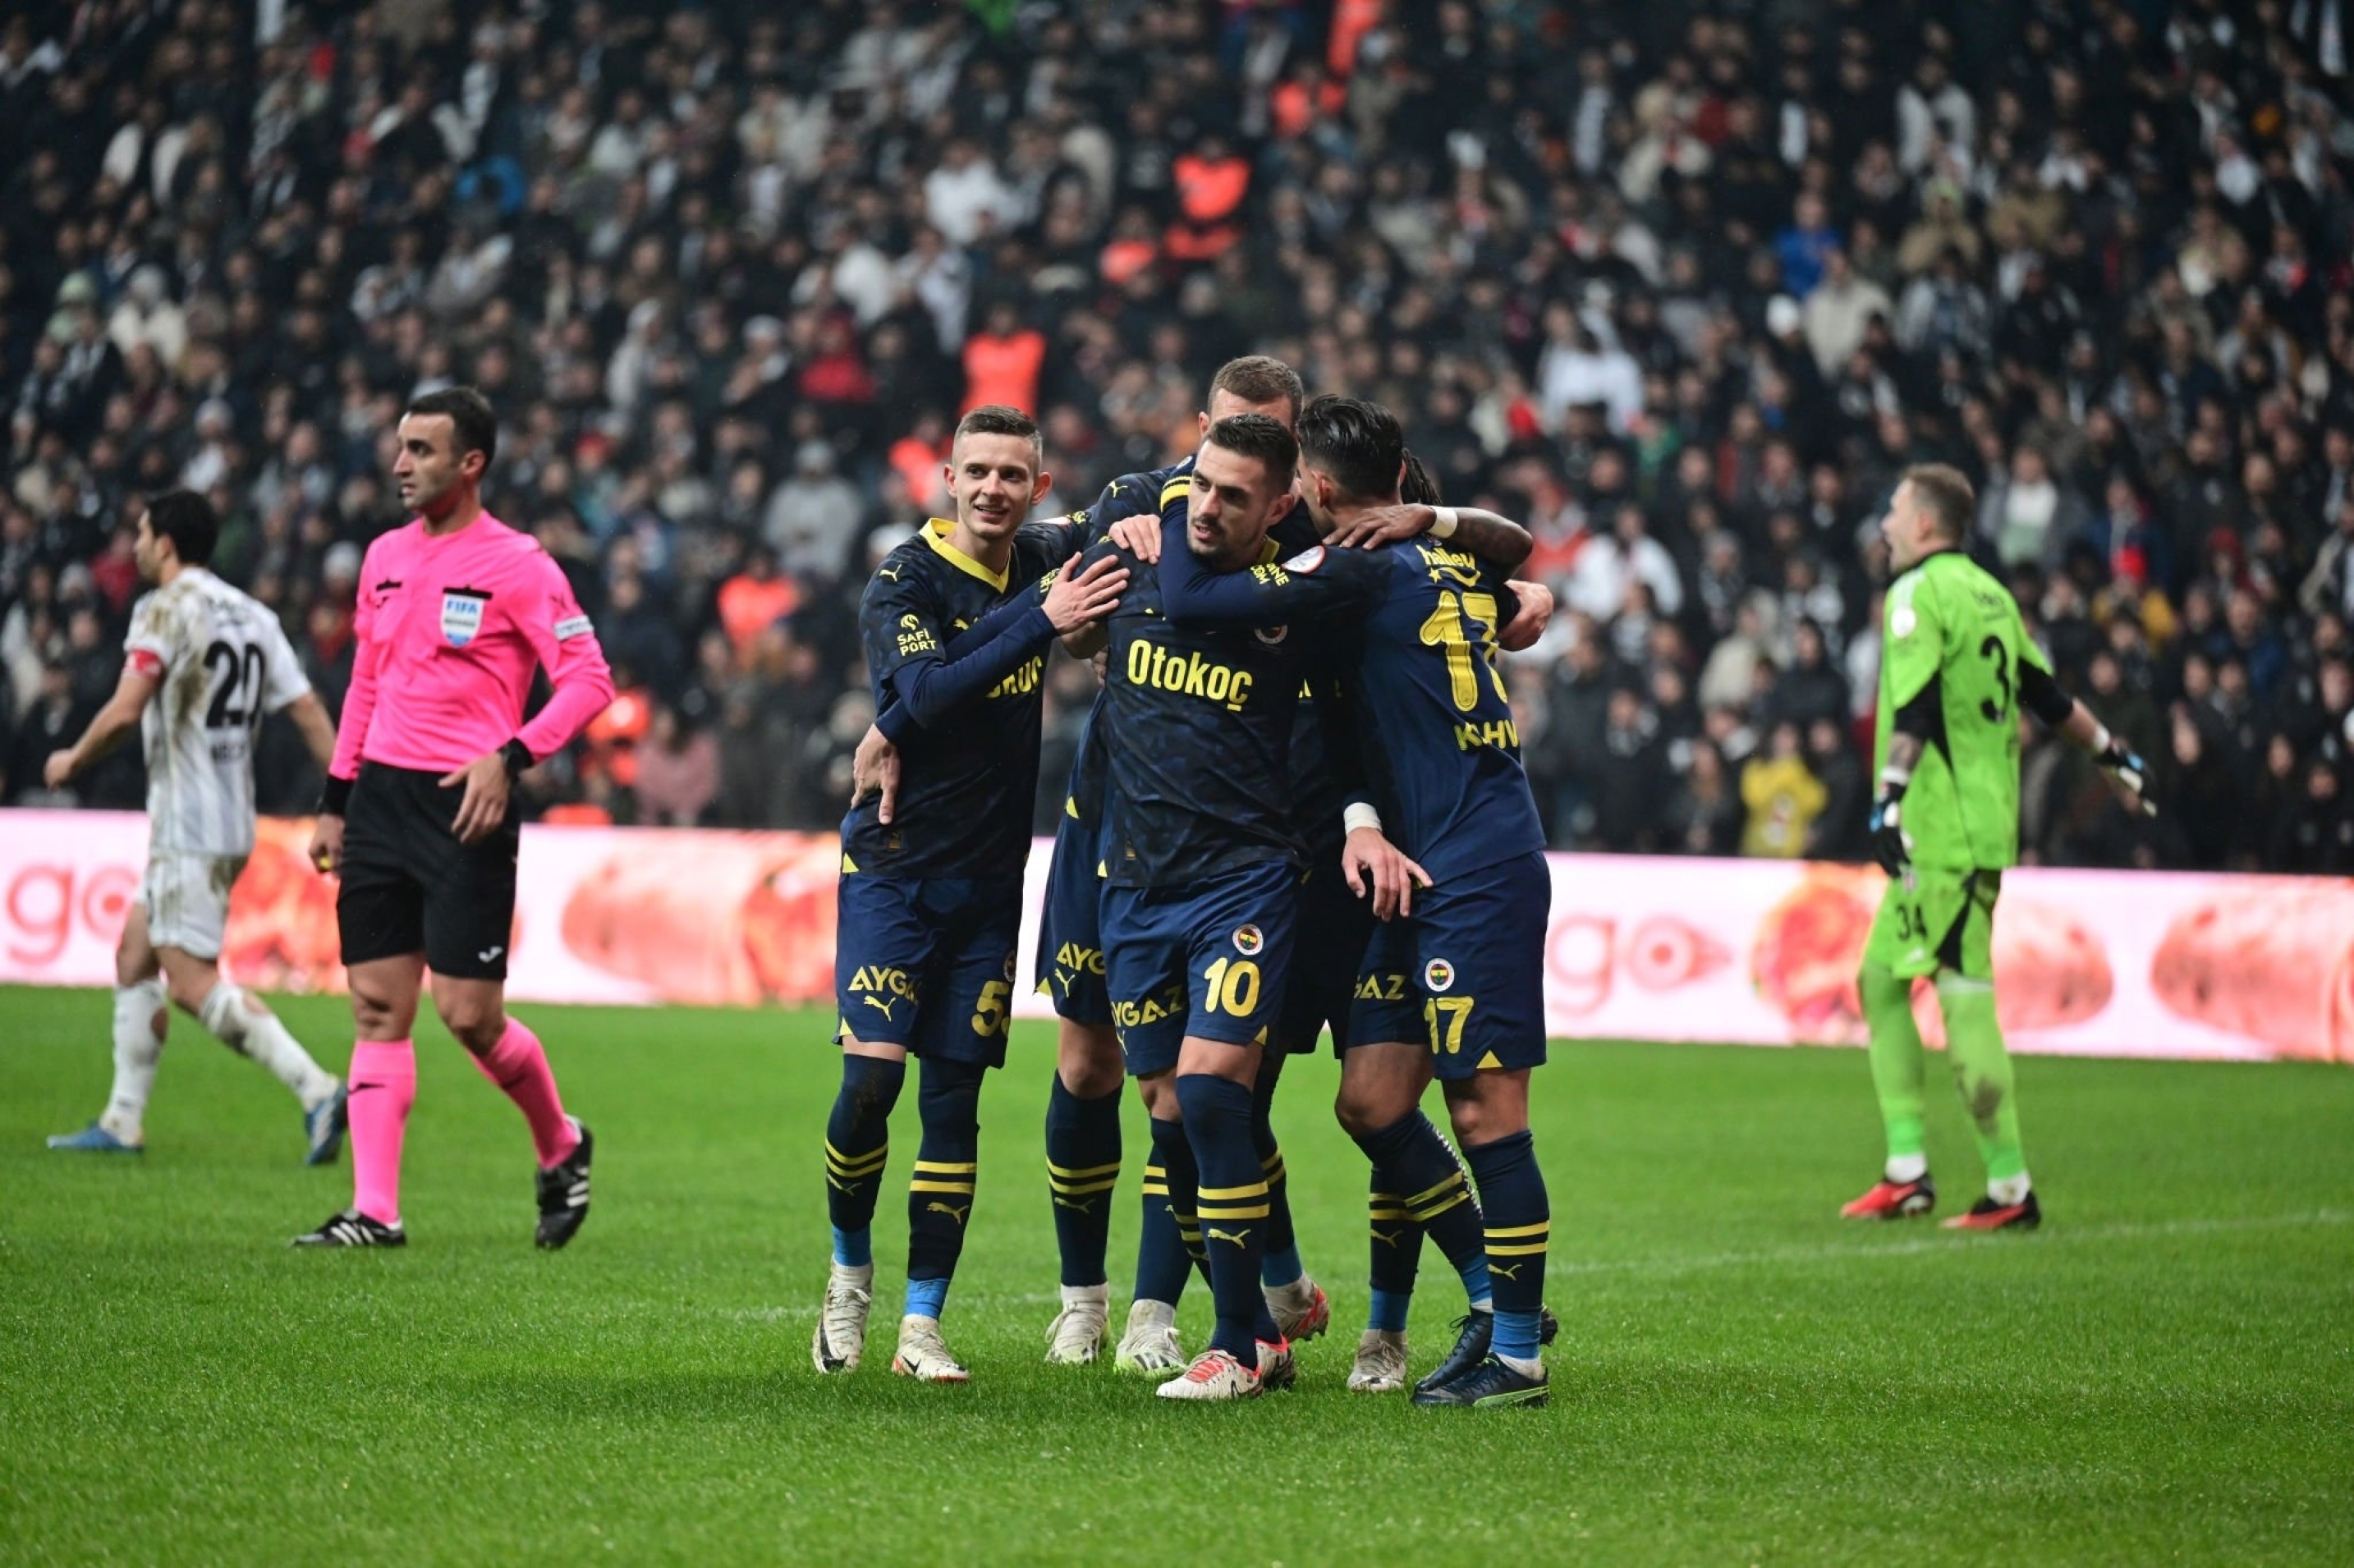 Süper Lig : Fenerbahce prend le derby et la tête du championnat